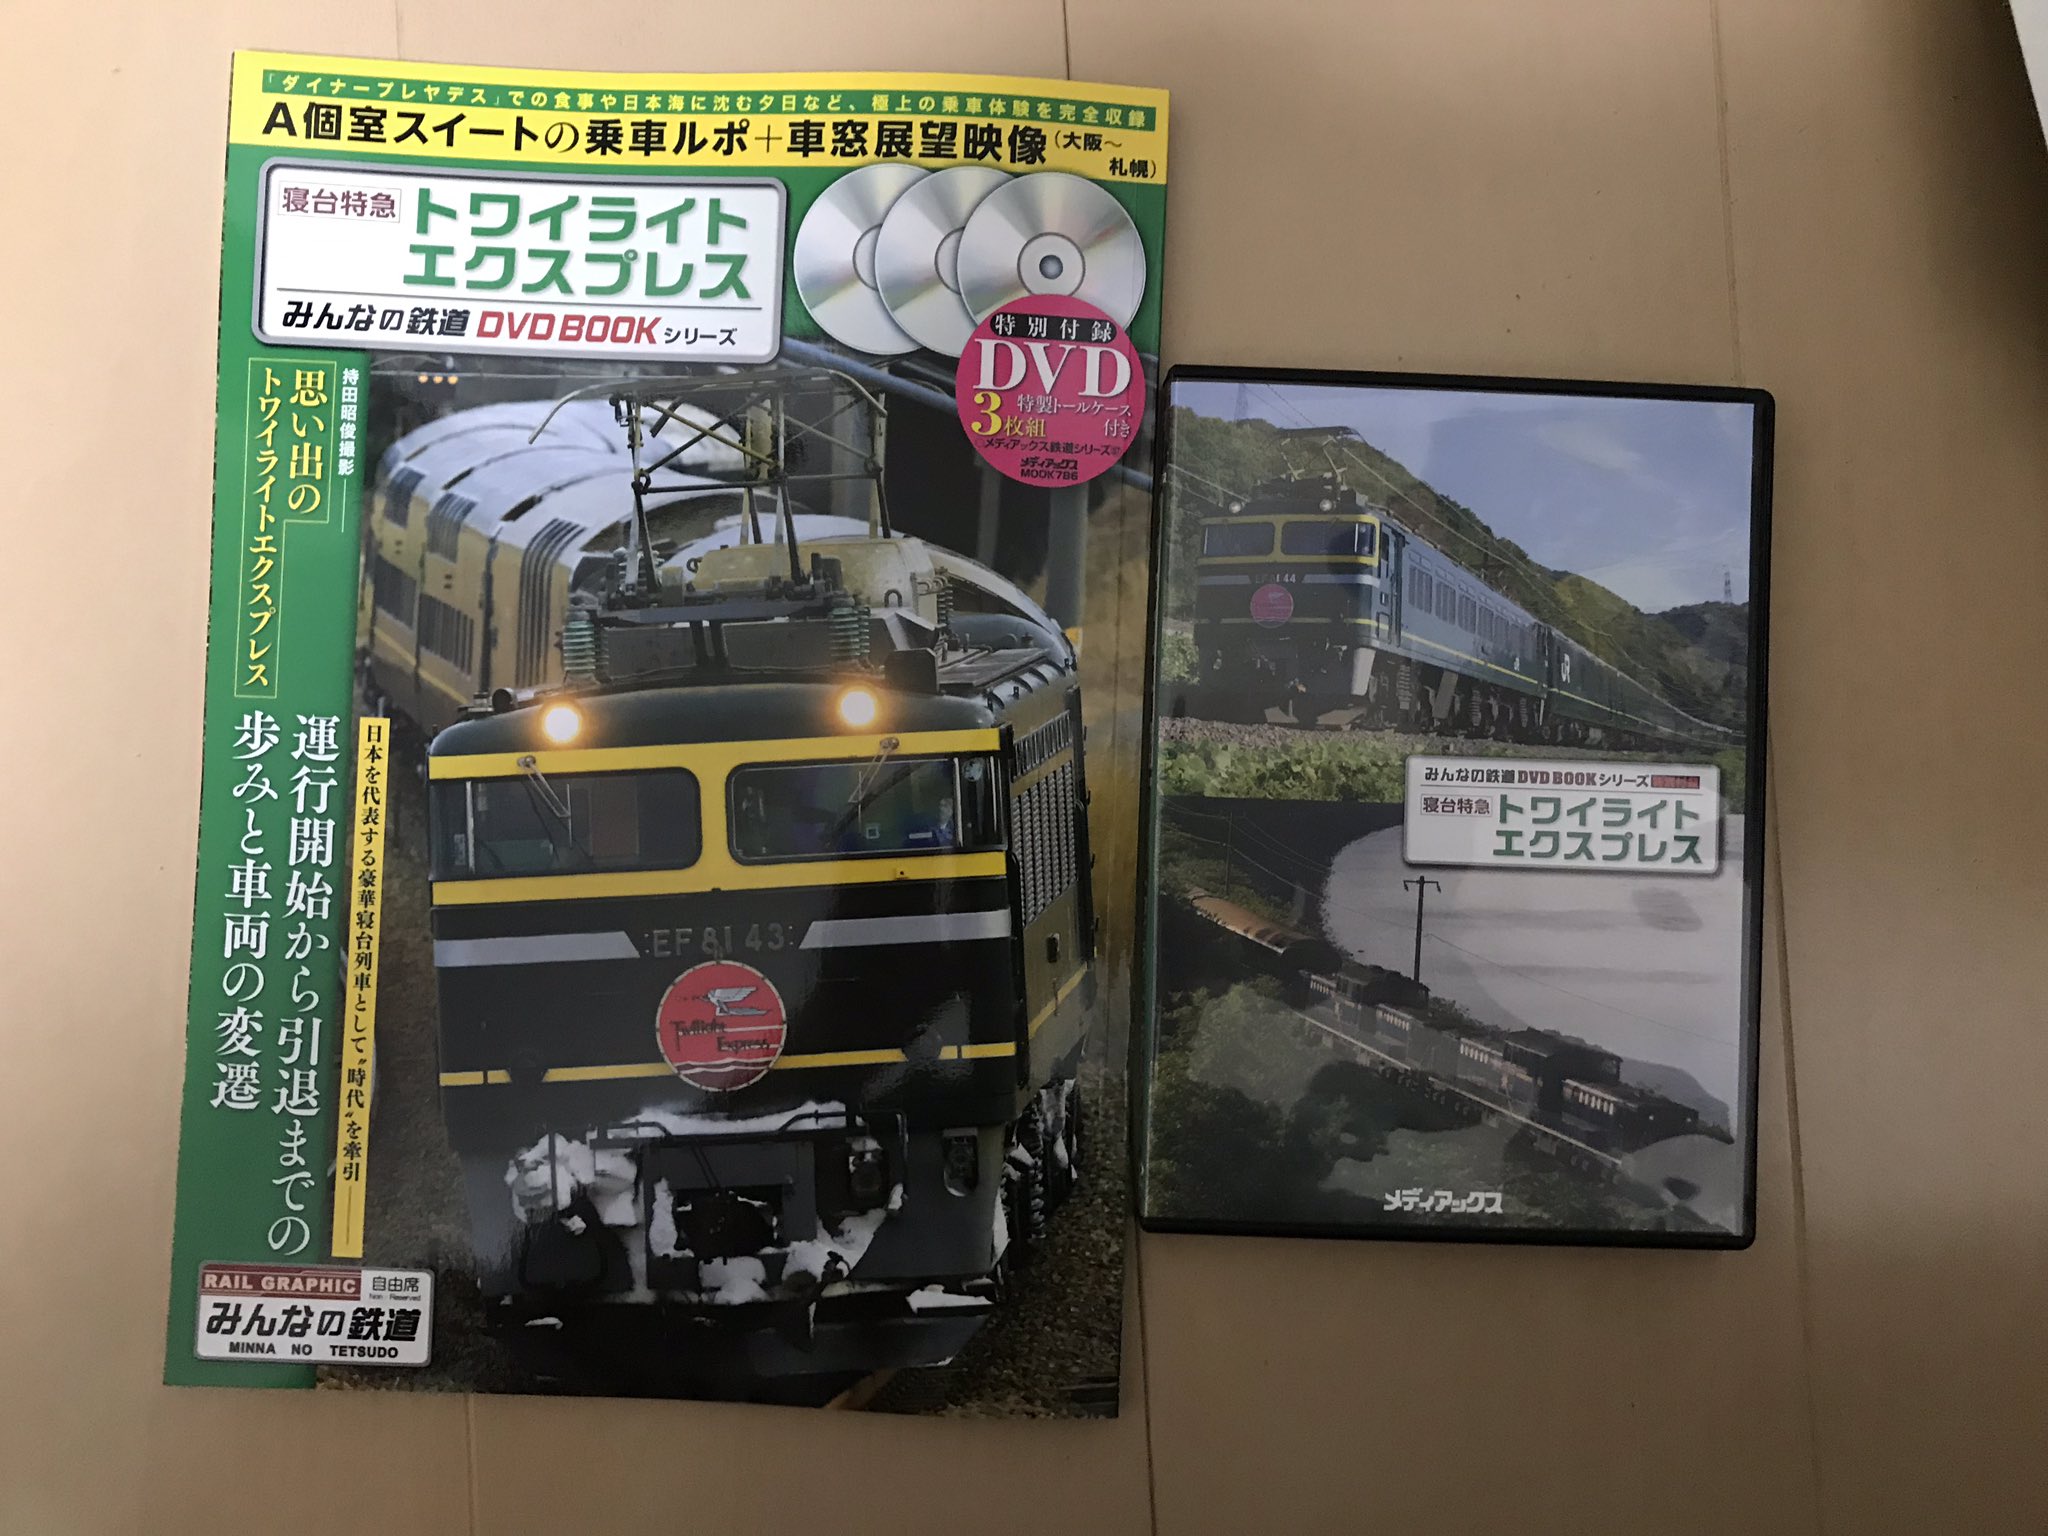 新品未開封 みんなの鉄道 Dvdbookシリーズ33枚 鉄道30枚 全63作品 Tonosycolores Com